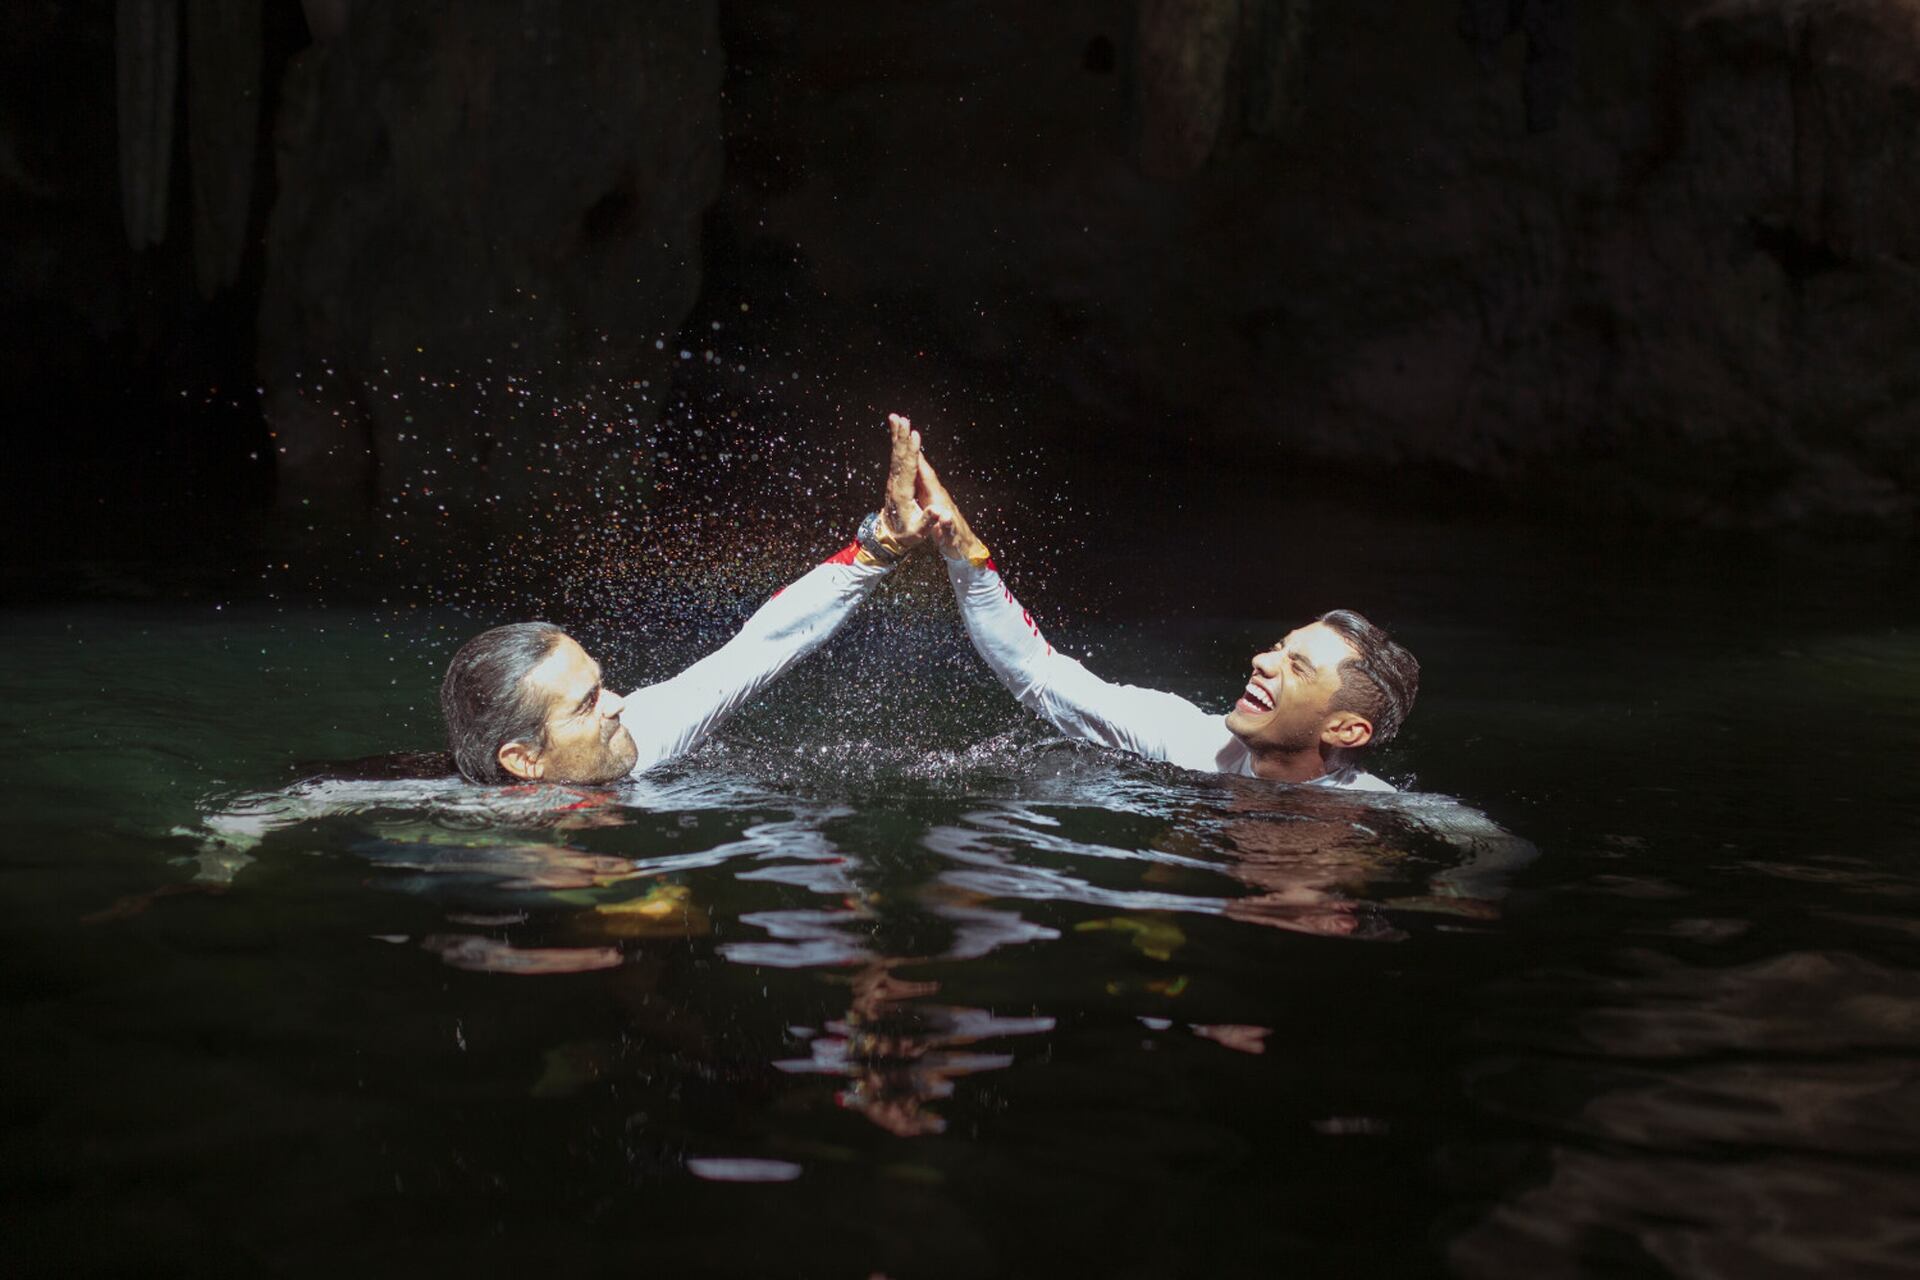 Orlando Duque y Jonathan Paredes celebran con un saludo luego de saltar en el Cenote Tsukán en Mérida, Yucatán